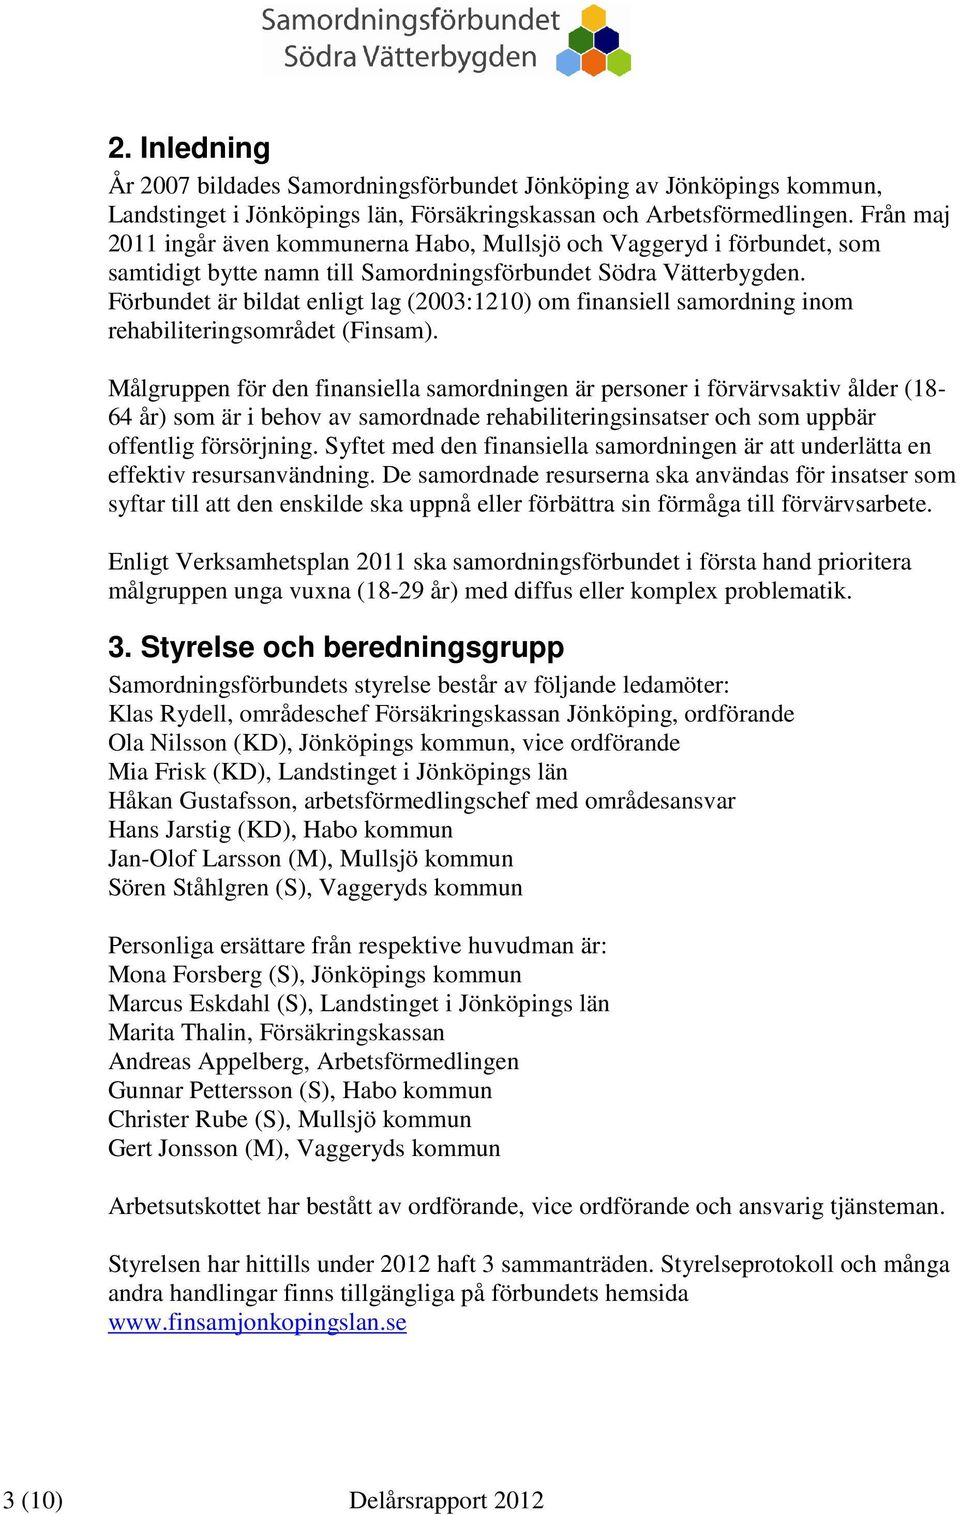 Förbundet är bildat enligt lag (2003:1210) om finansiell samordning inom rehabiliteringsområdet (Finsam).